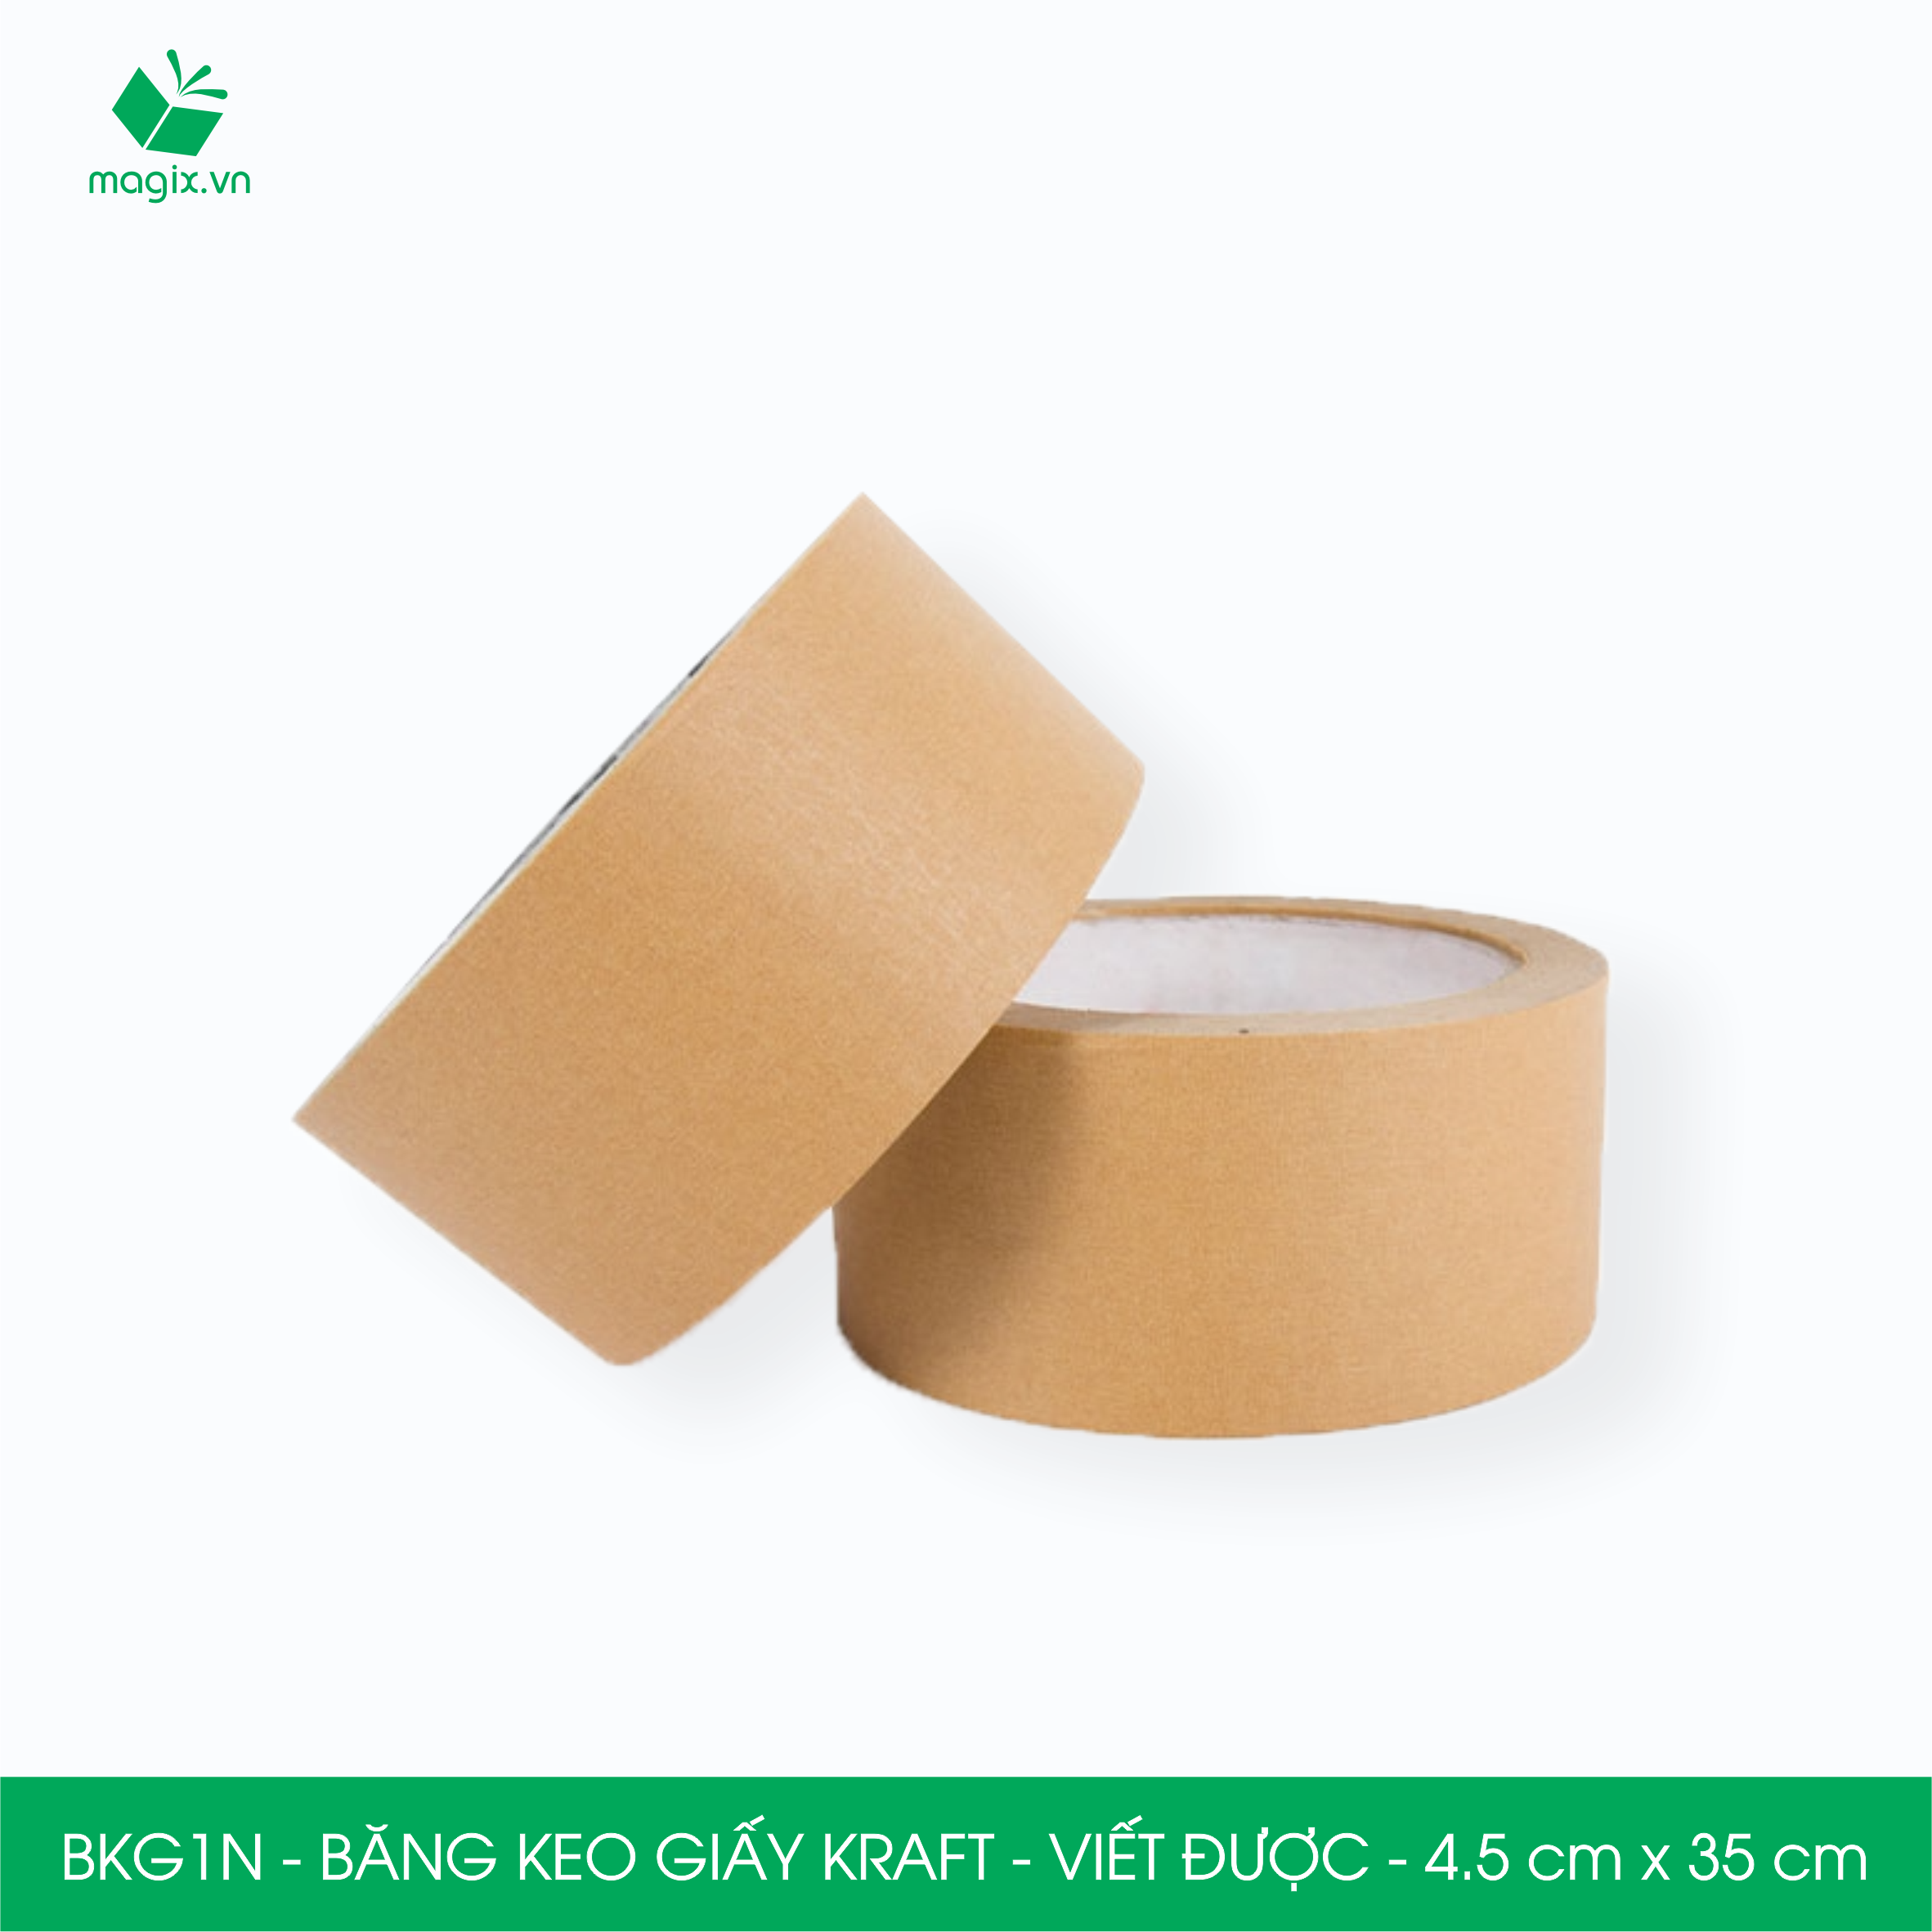 BKG1N - 4.5cm x 35m - 6 cuộn băng keo giấy Kraft da bò mặt nhám viết được - băng dính kraft đóng hàng